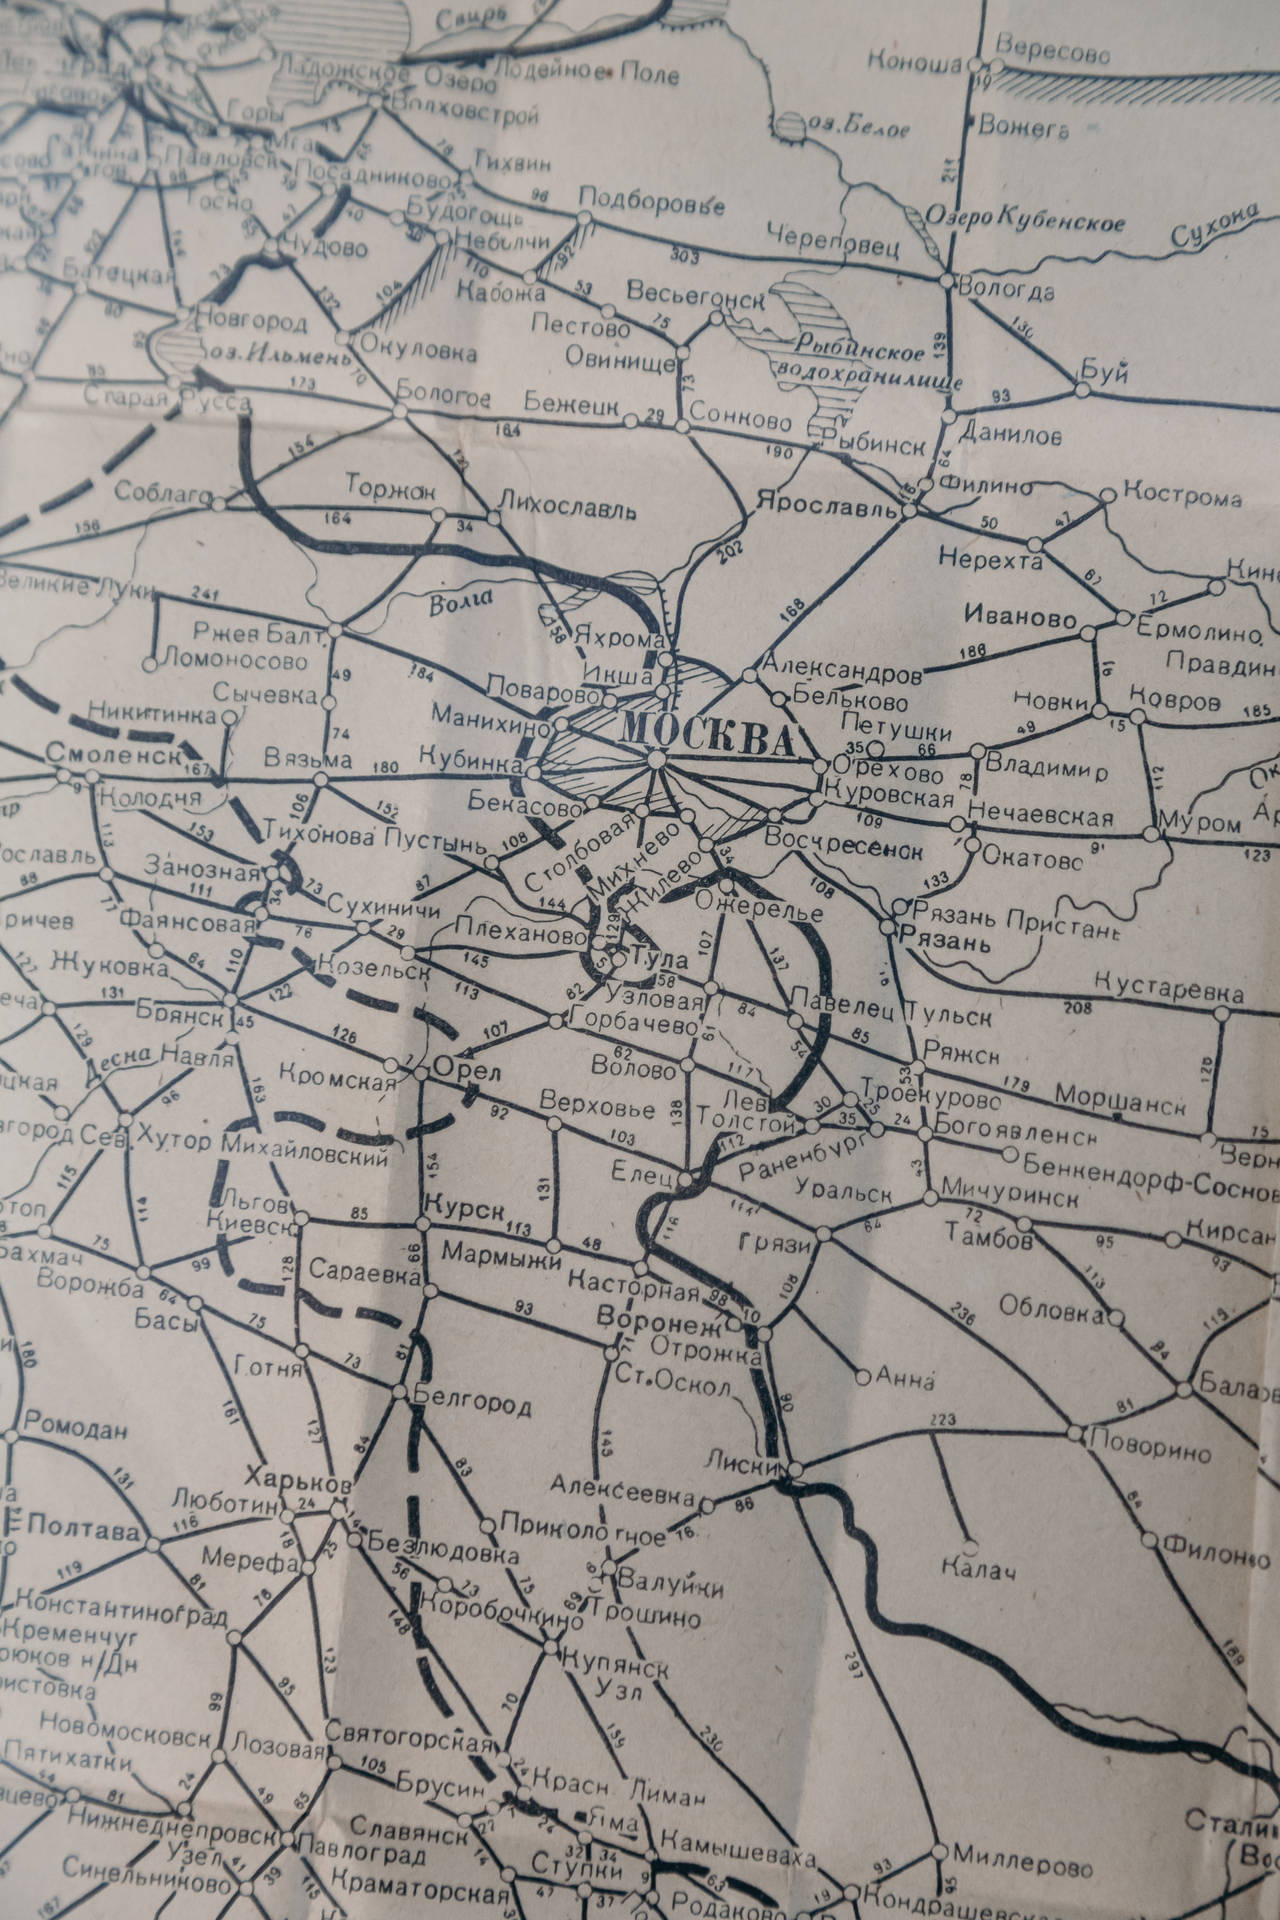 Topografisk Kort Over Moskva Wallpaper